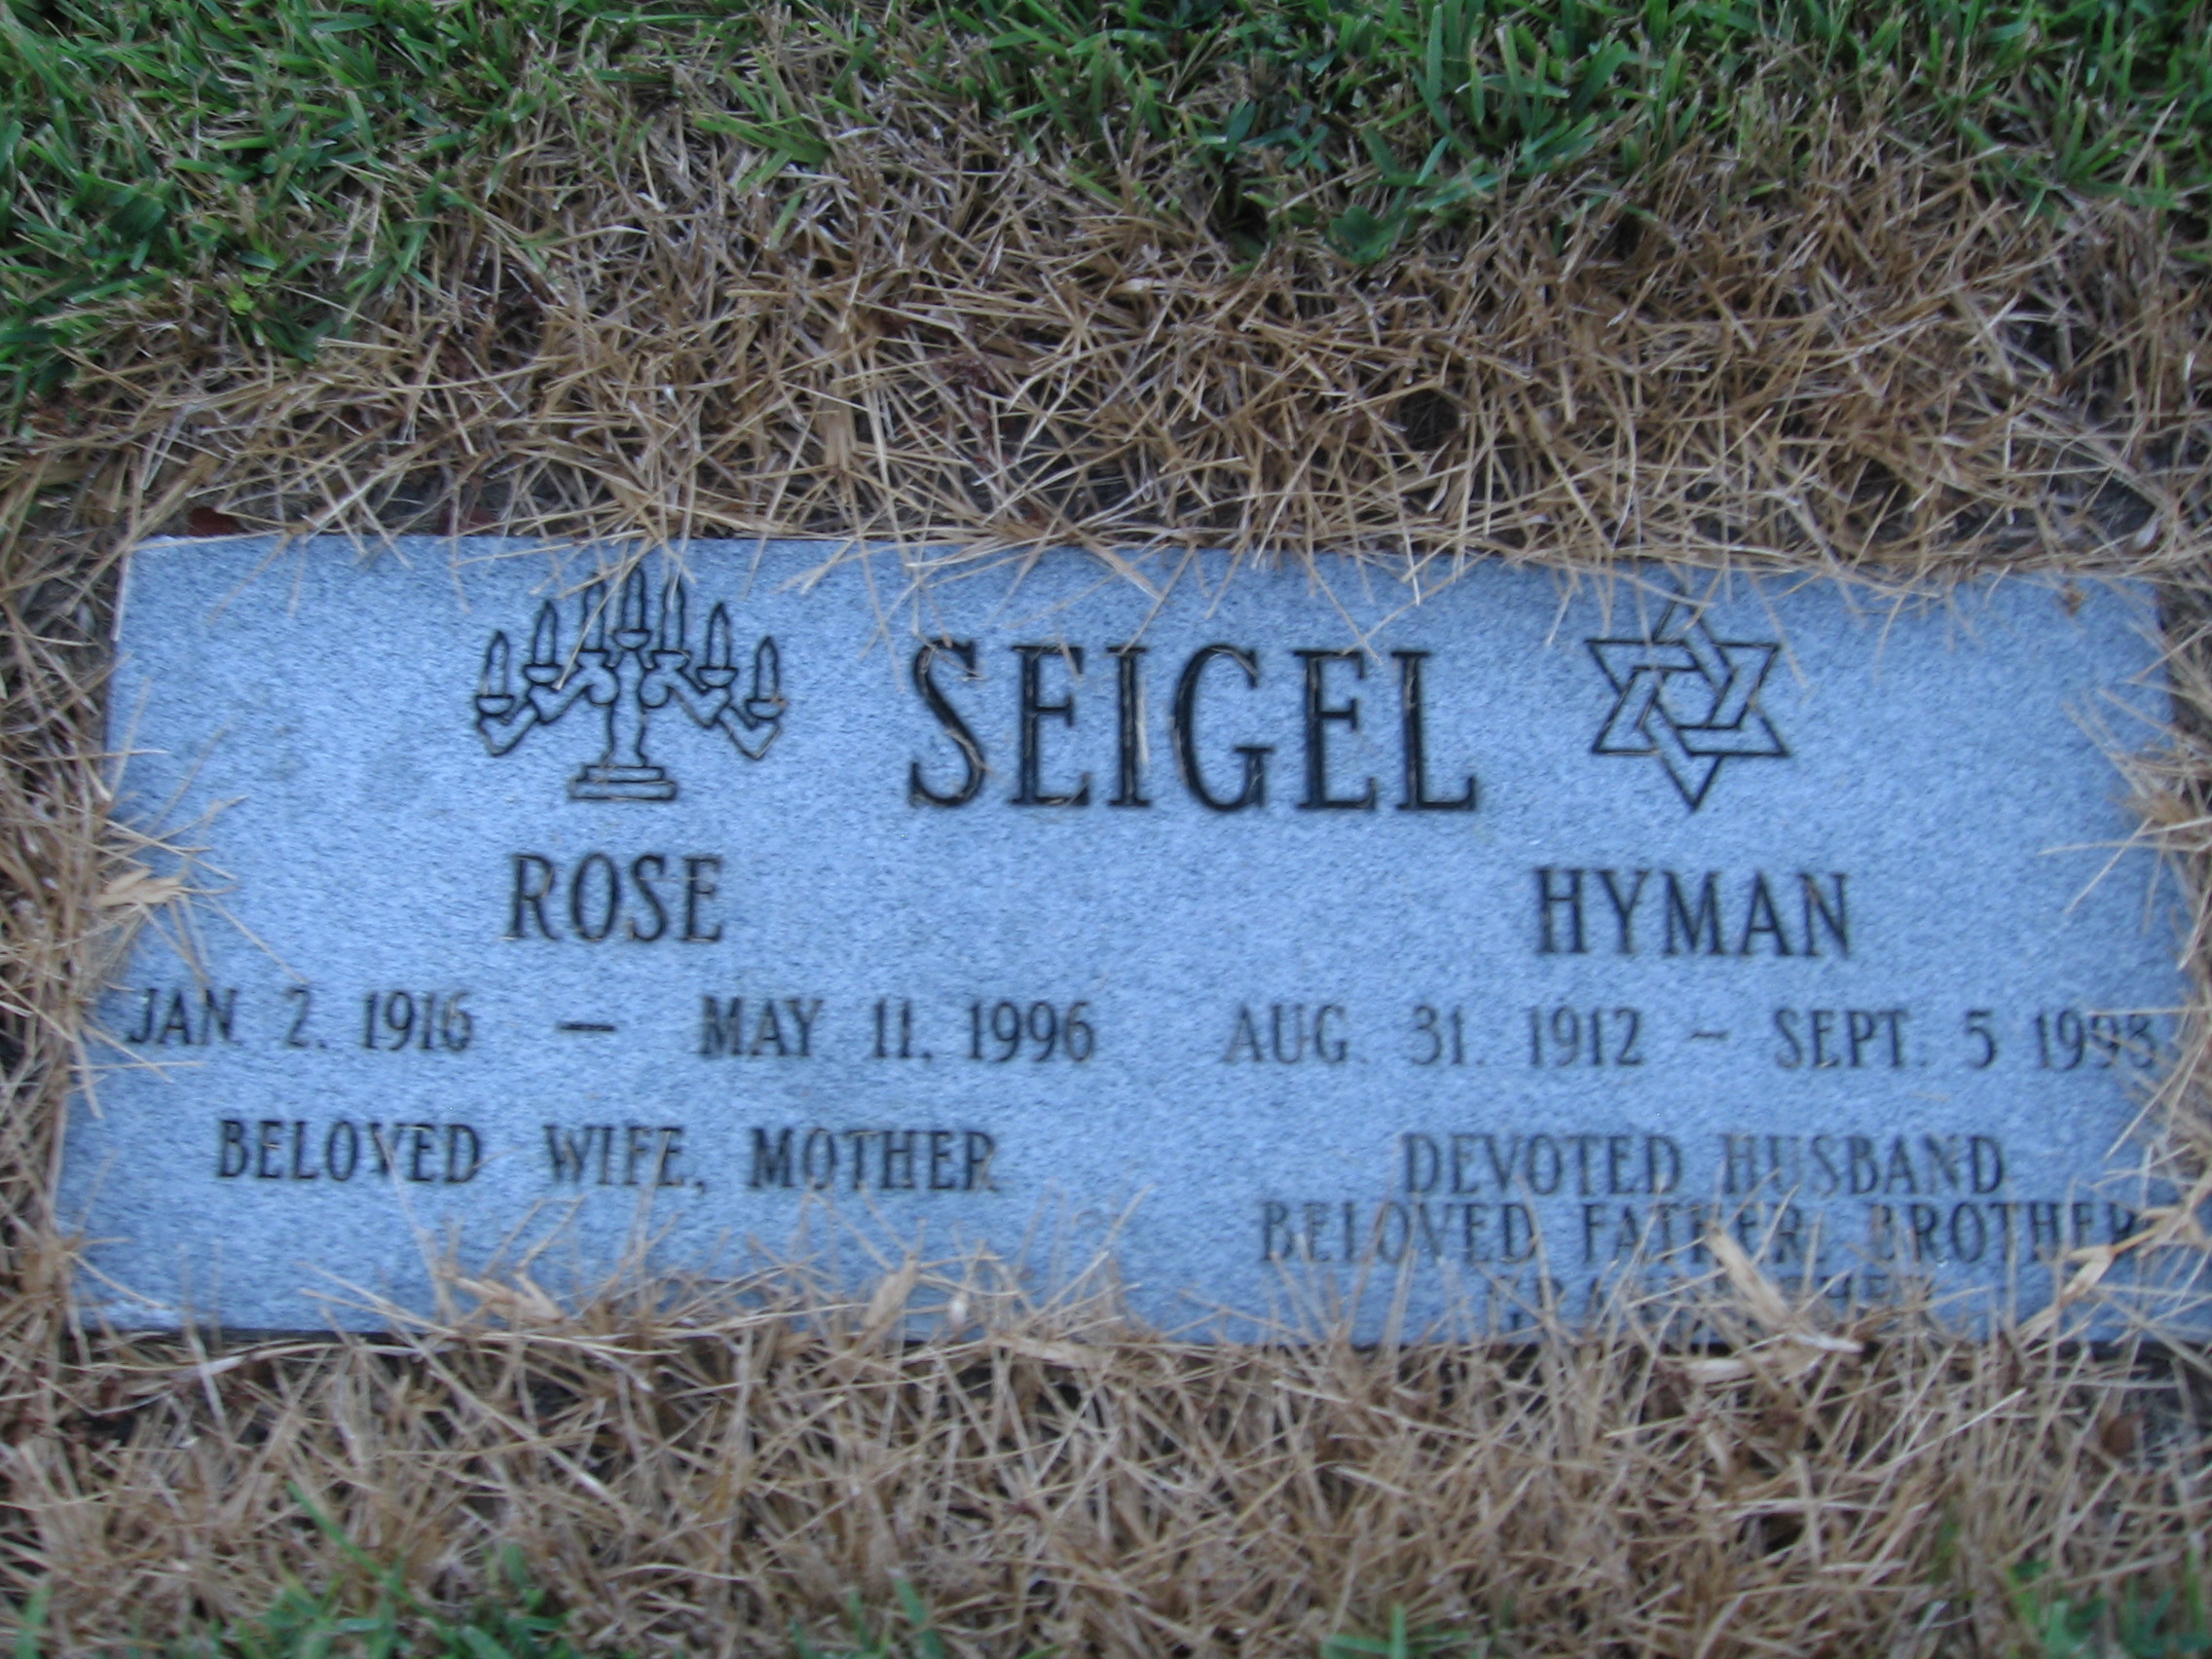 Hyman Seigel